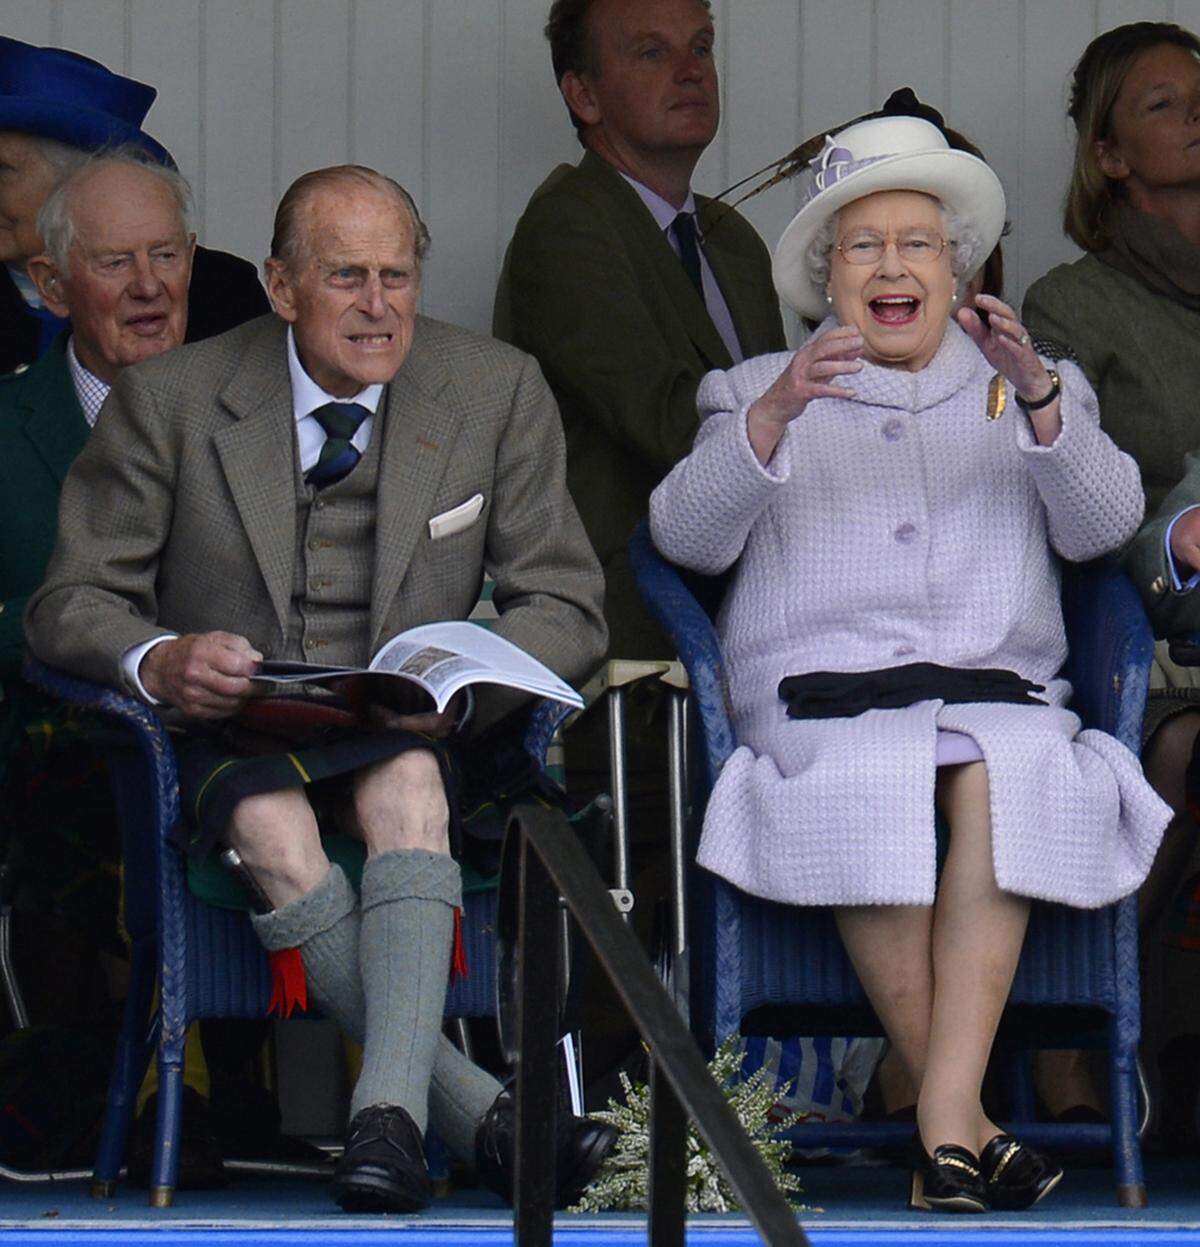 Nicht nur Prinz Harry bereitet dem britischen Königshaus sorgen, auch über den letzten Auftritt ihres Ehemanns soll die Queen not amused sein. Wie üblich soll Philip keine Unterhose unter seinem Schottenrock getragen haben und in einem unachtsamen Moment wie sein Enkel seine Kronjuwelen gezeigt haben.